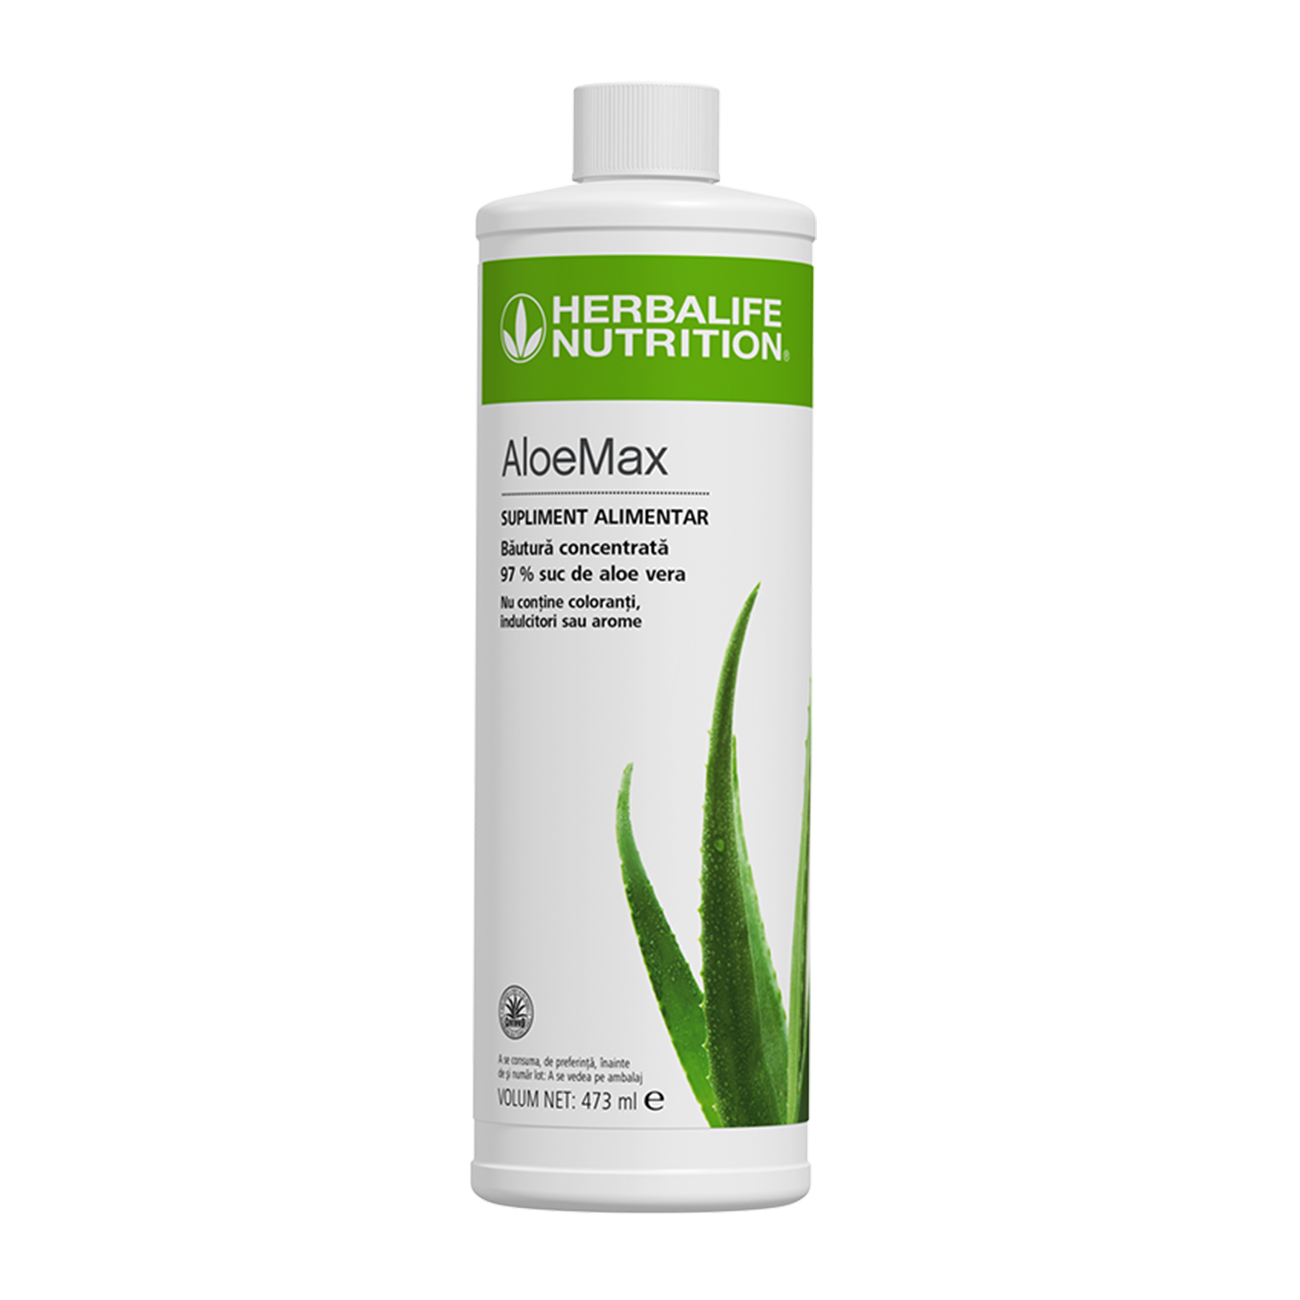 Băutură concentrată AloeMax 97% suc de Aloe Vera   product shot